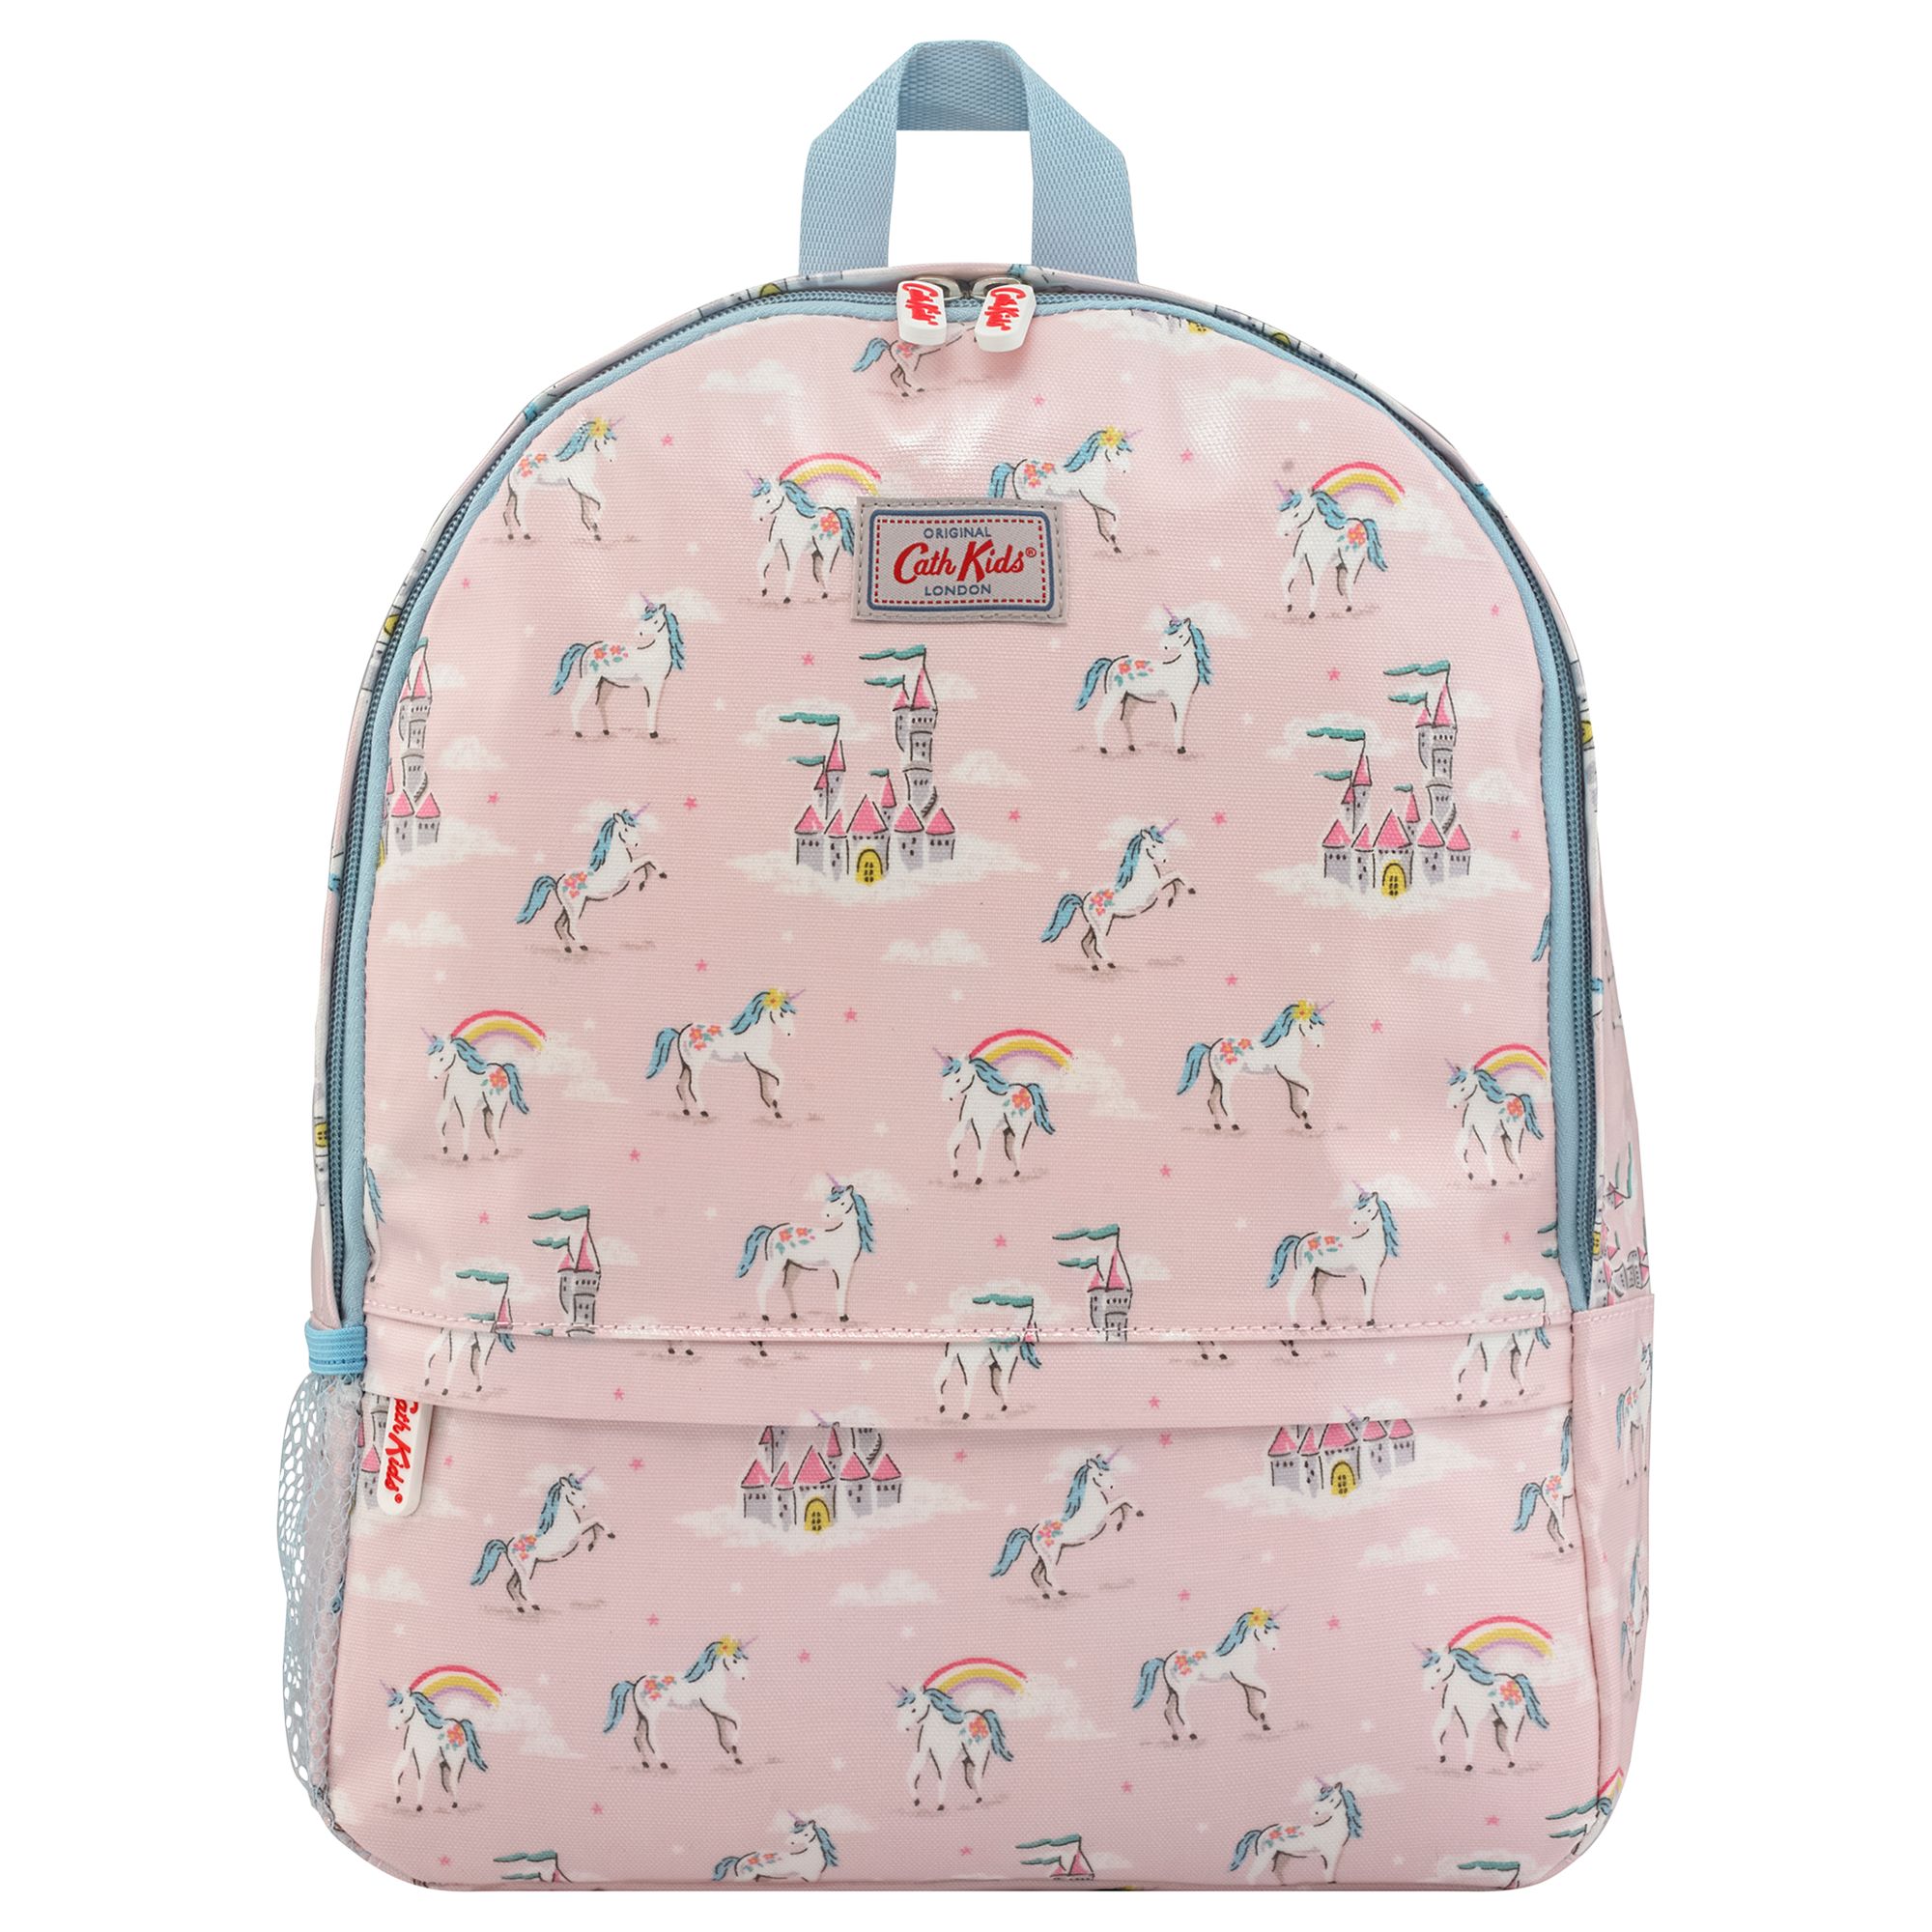 unicorn cath kidston bag